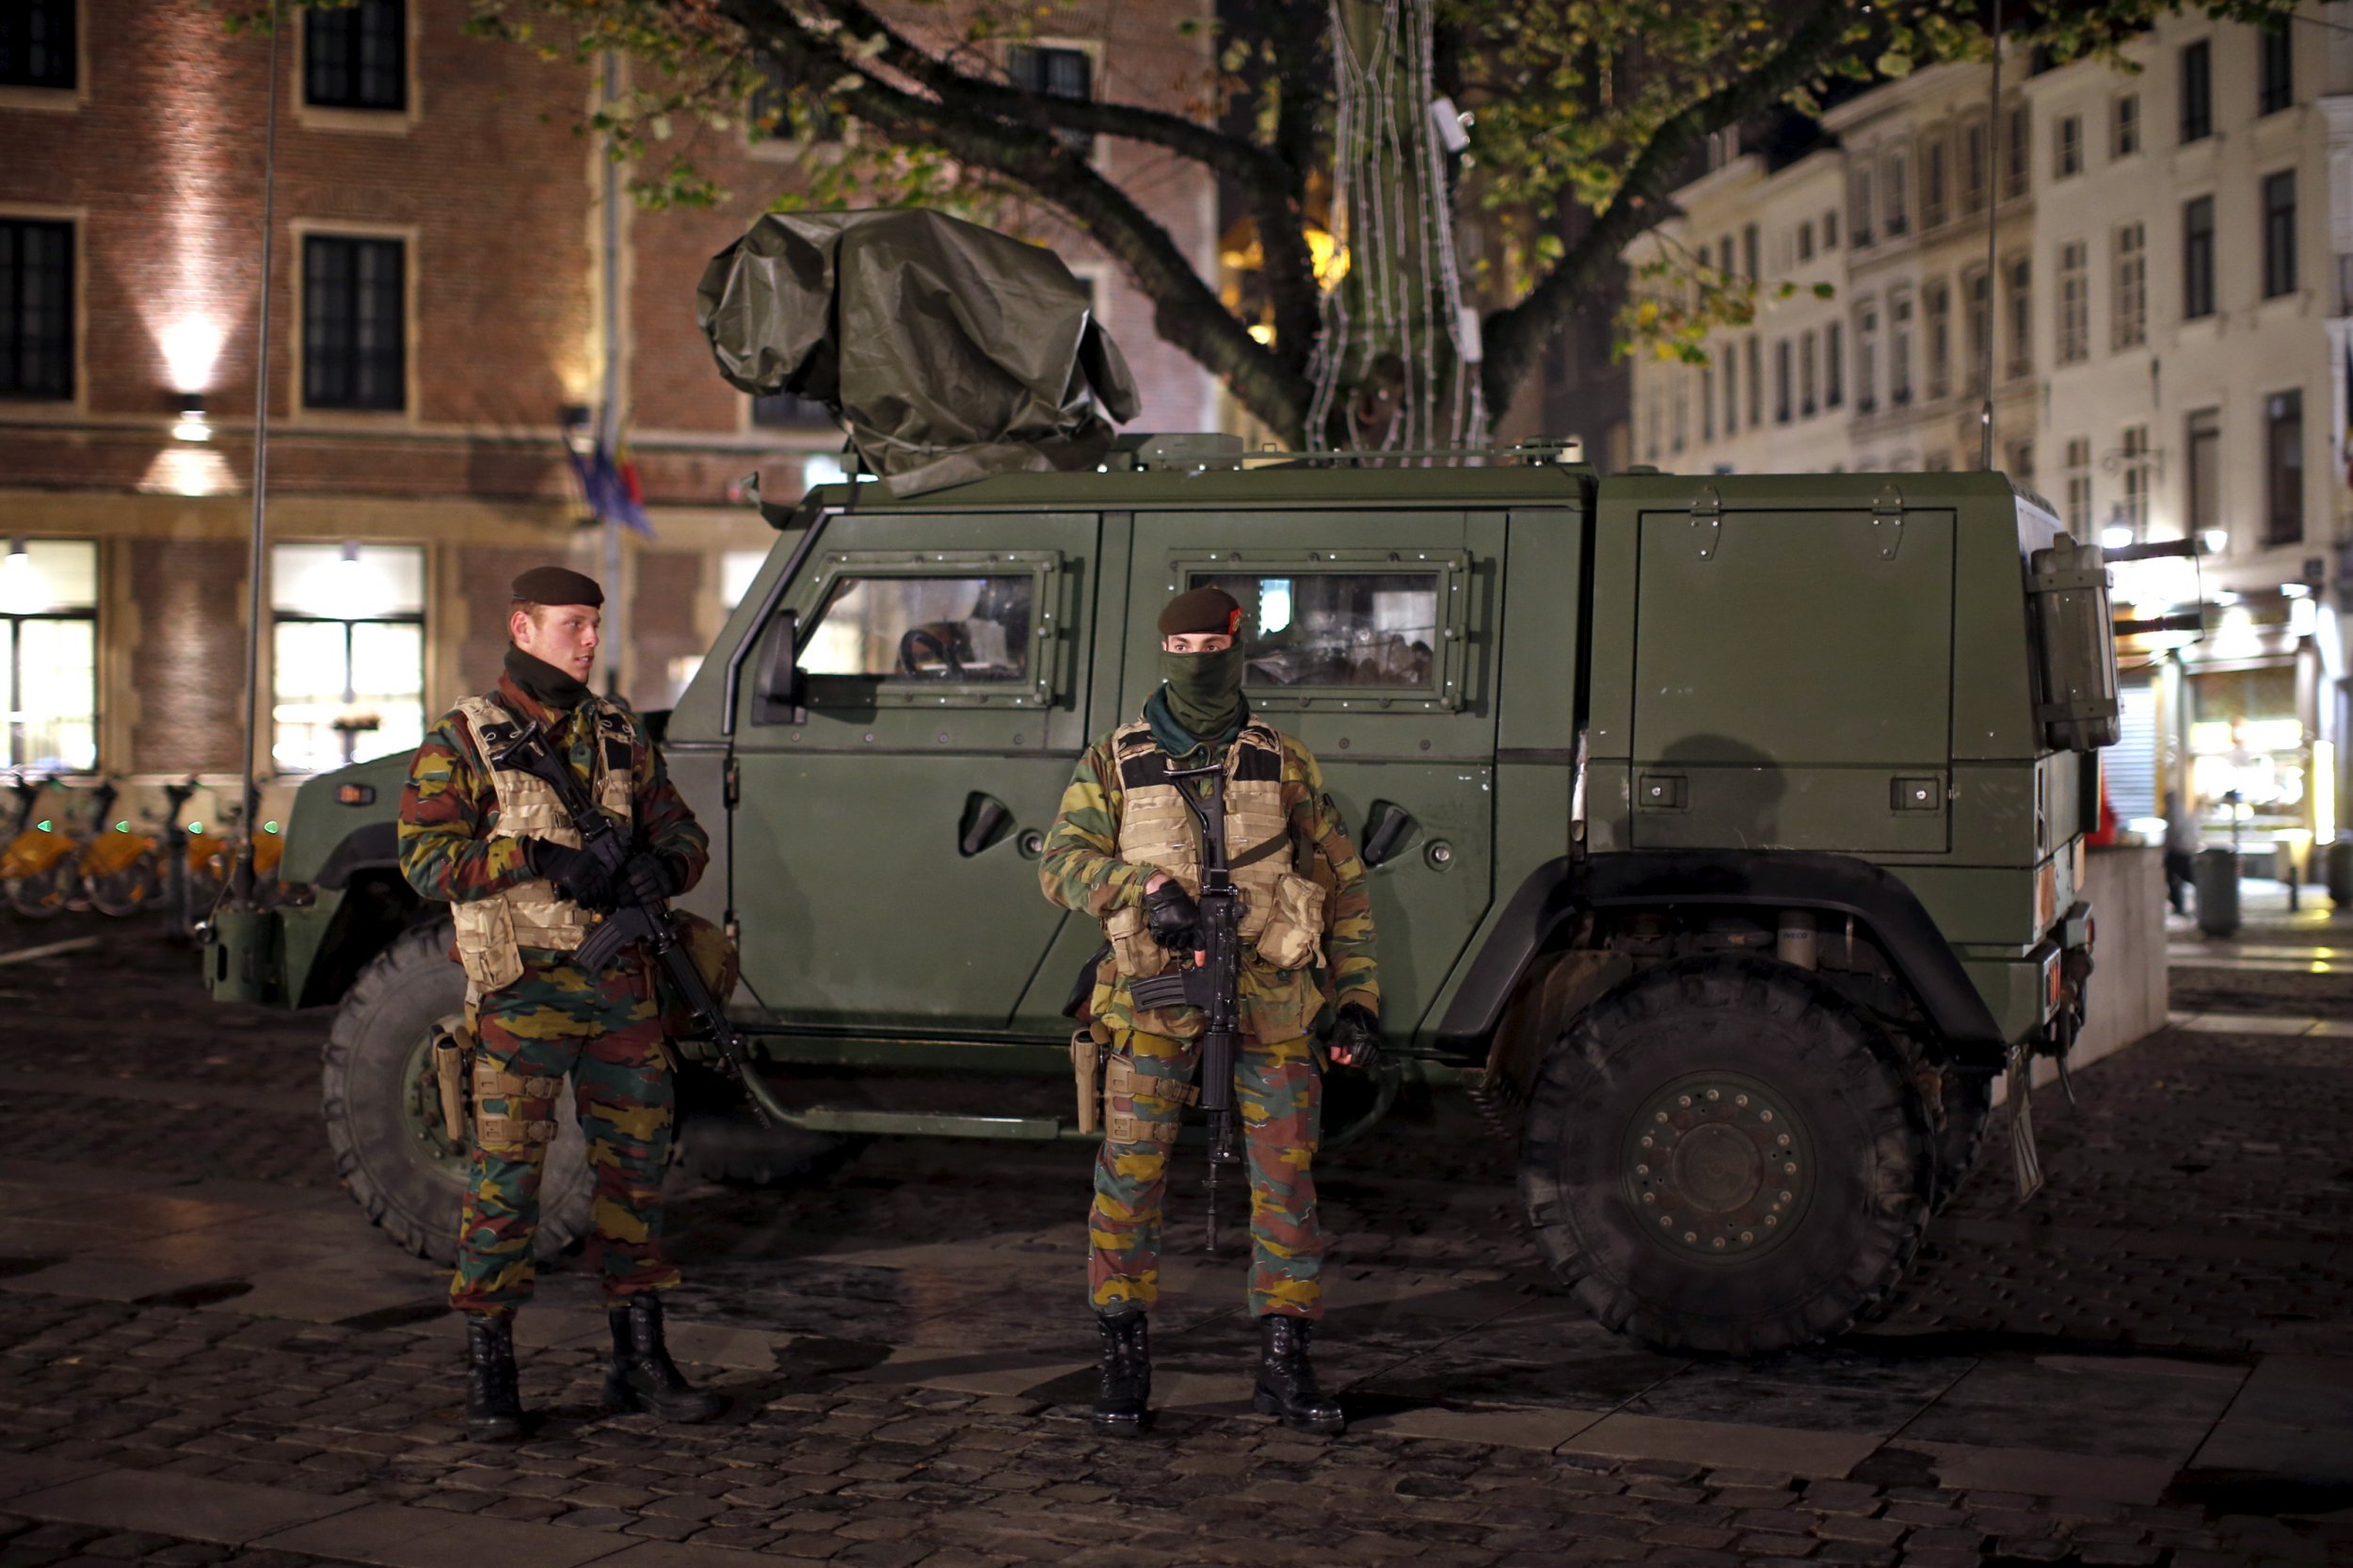 belgium children and armed conflict